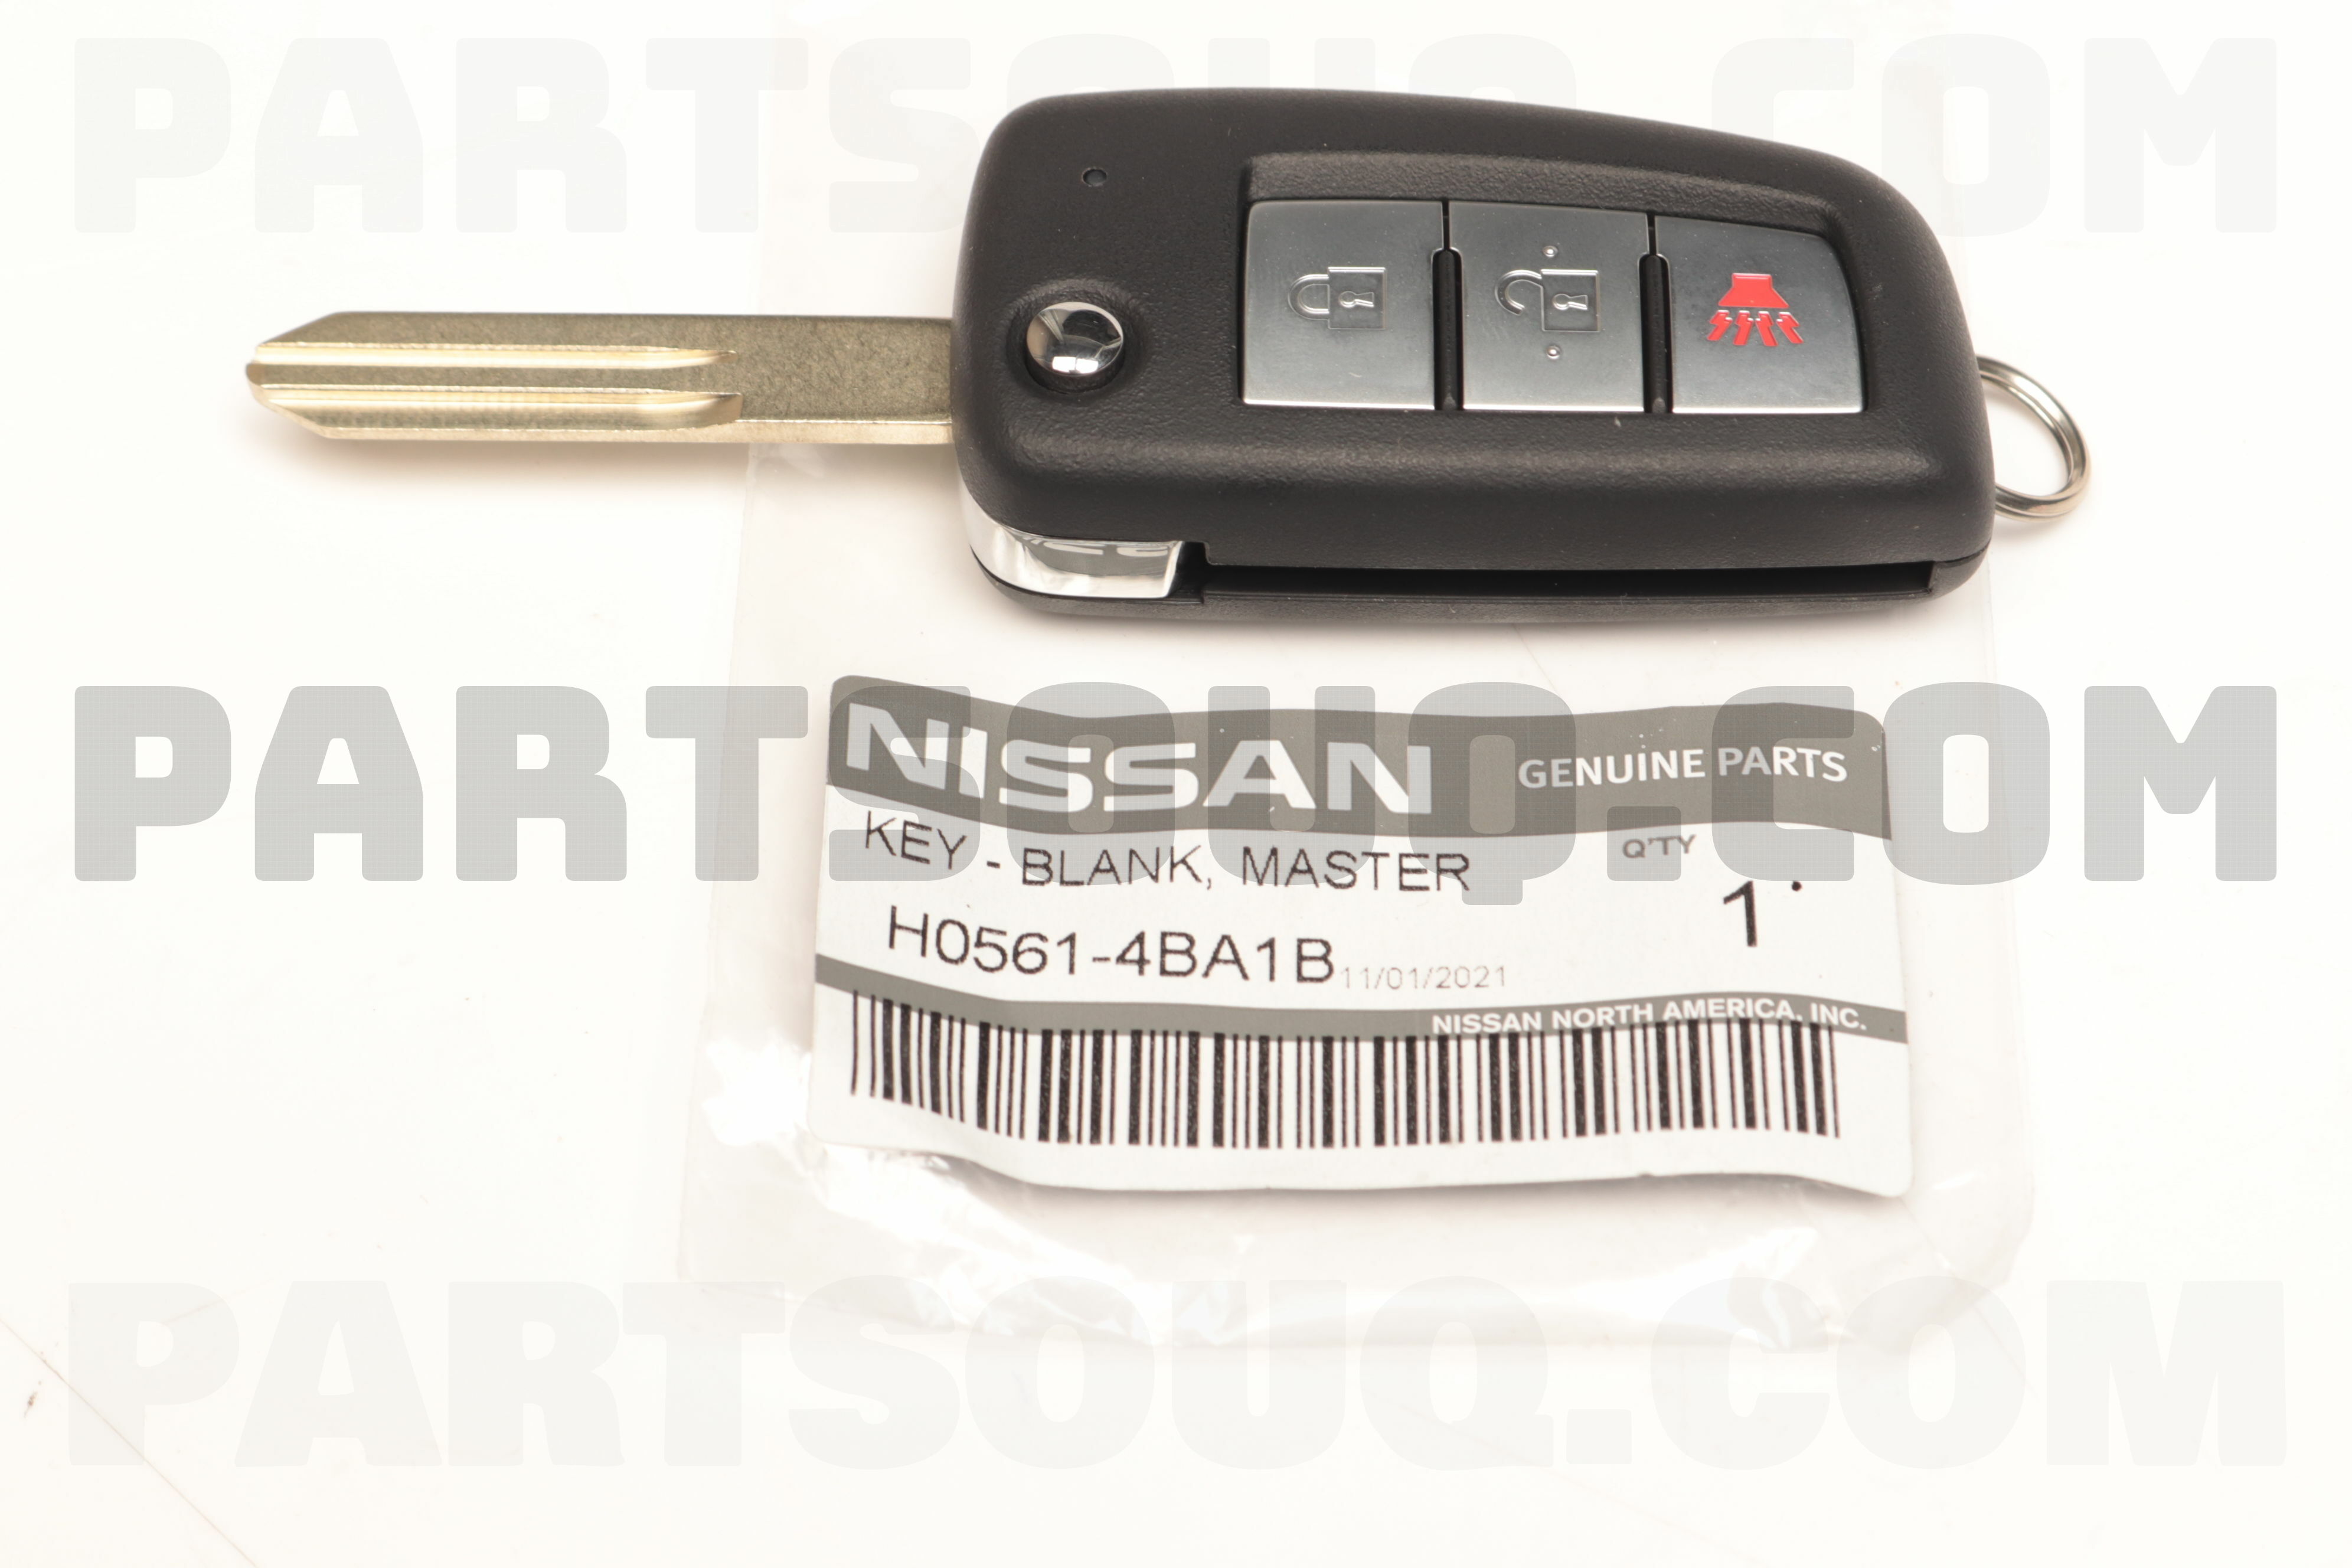 Auto Key Chain for Key Fob, Nissan price in Kuwait, Souq Kuwait